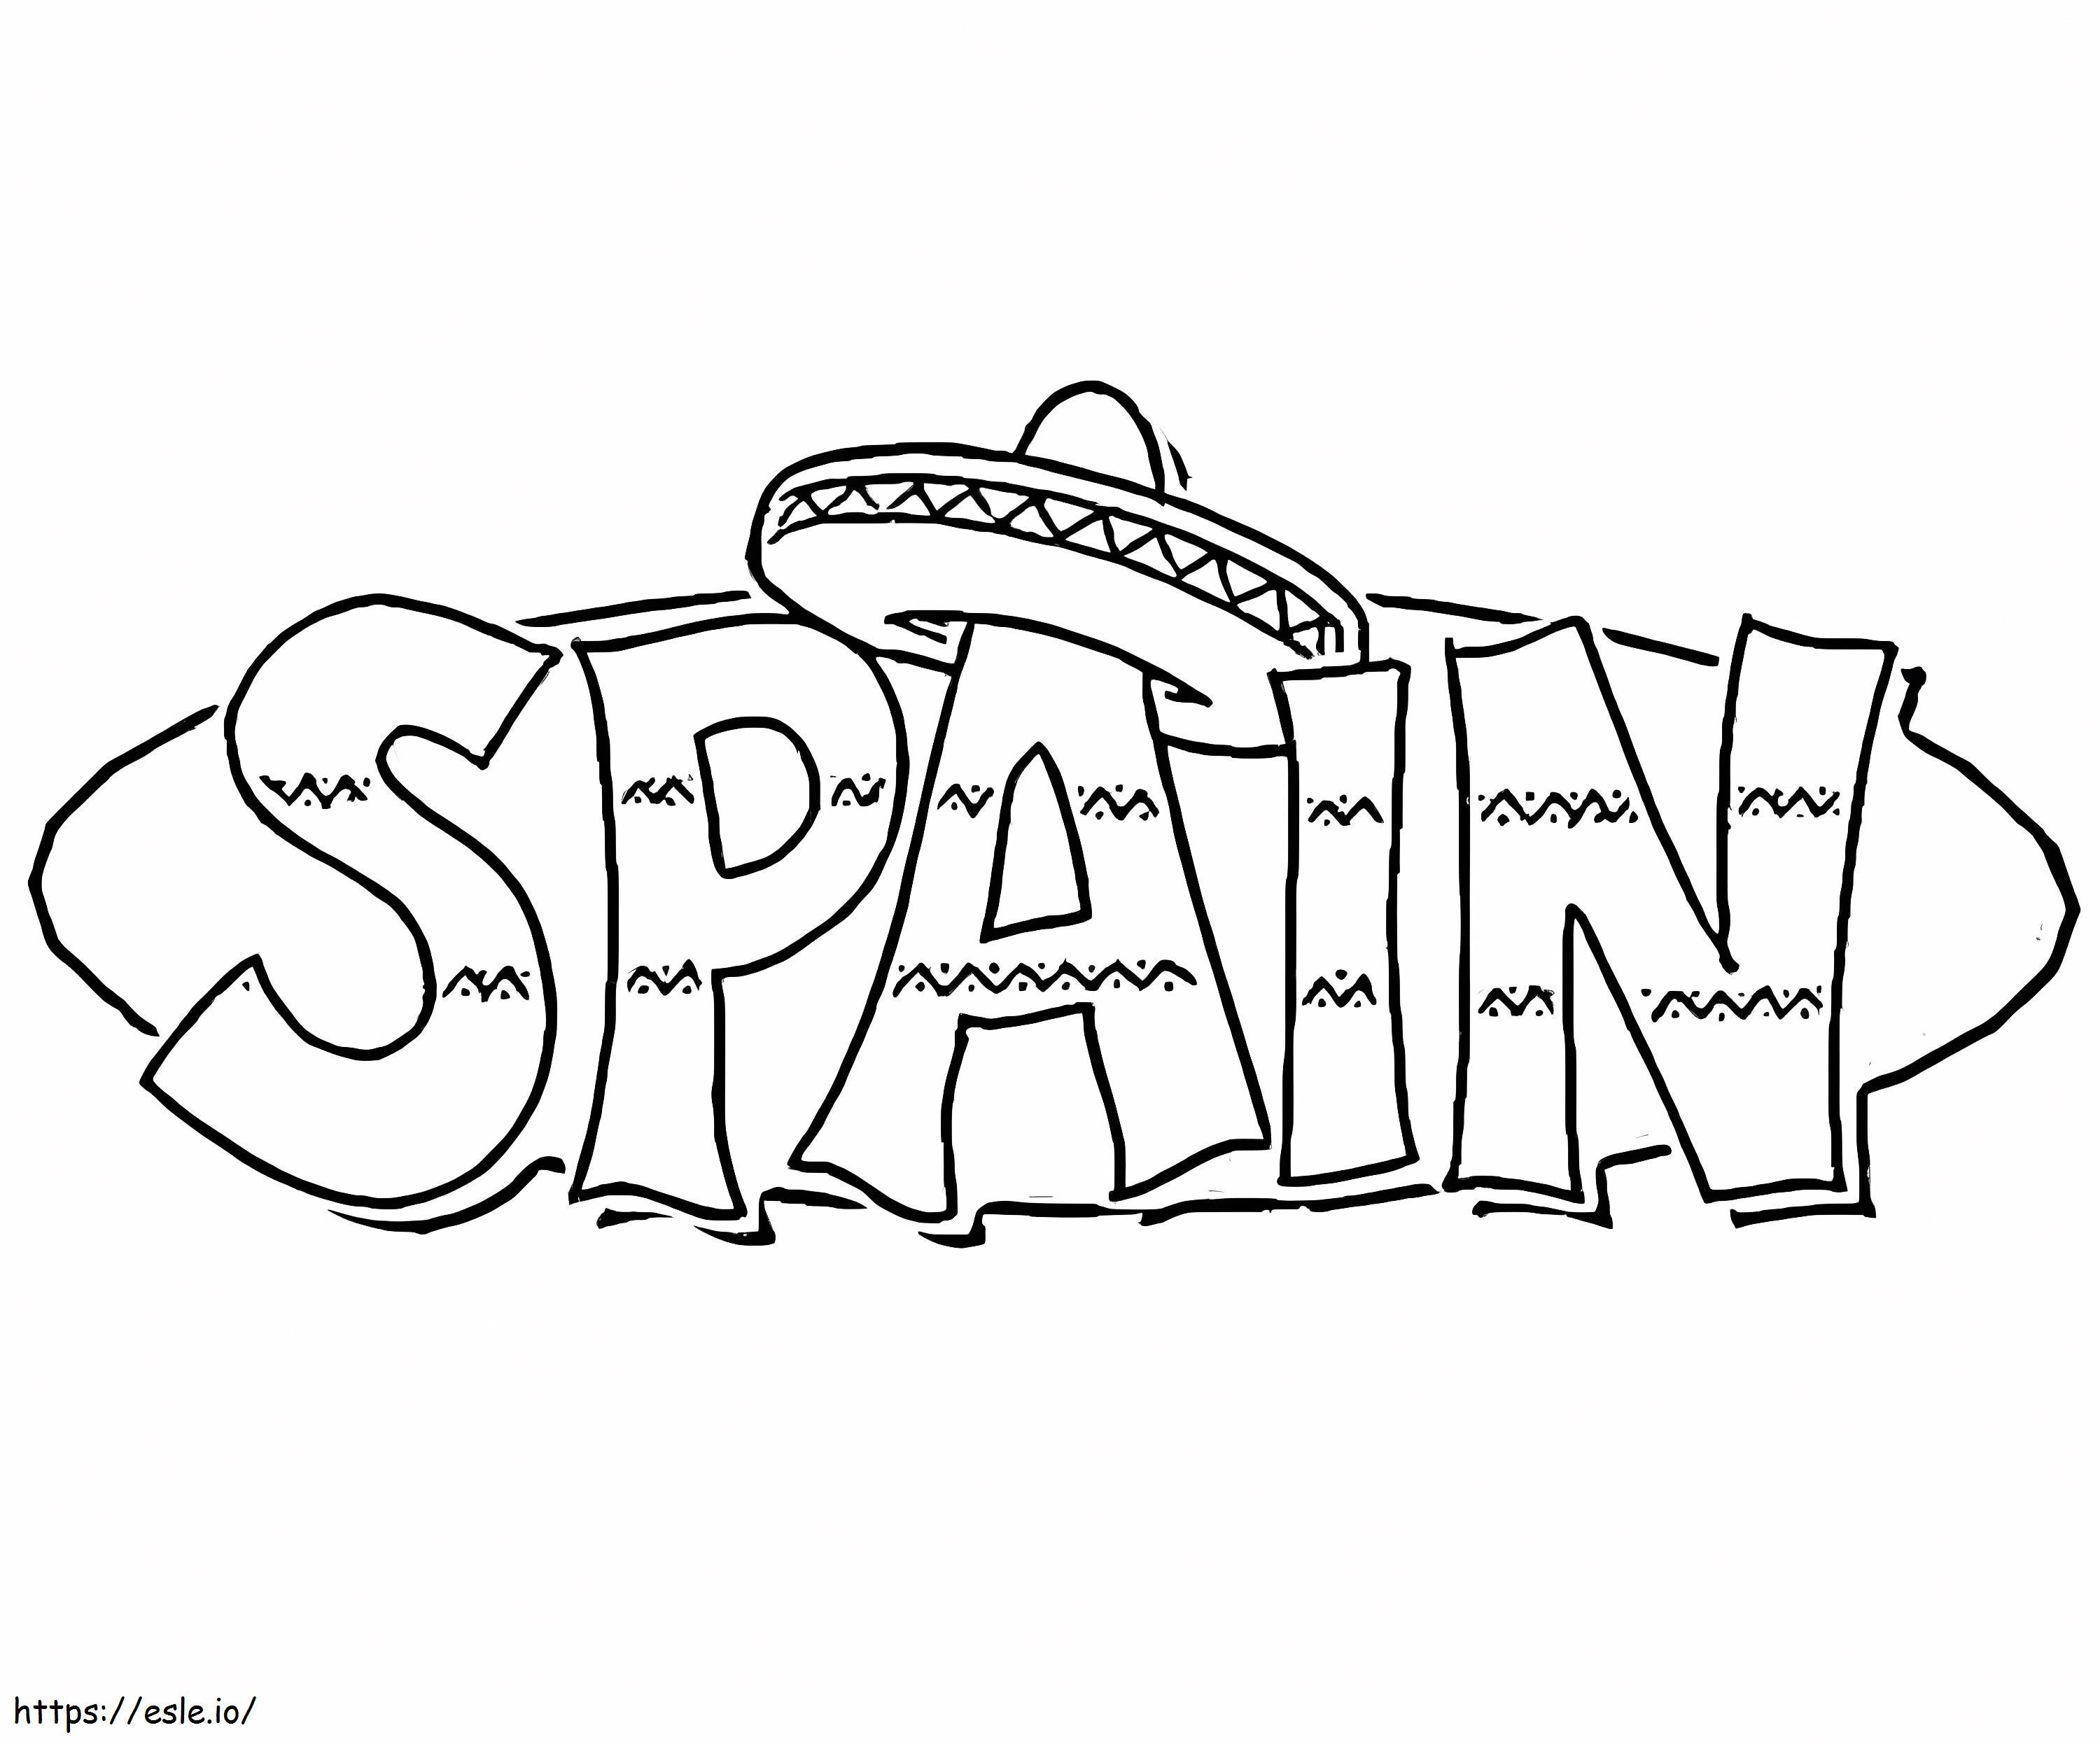 Hut in Spanien ausmalbilder